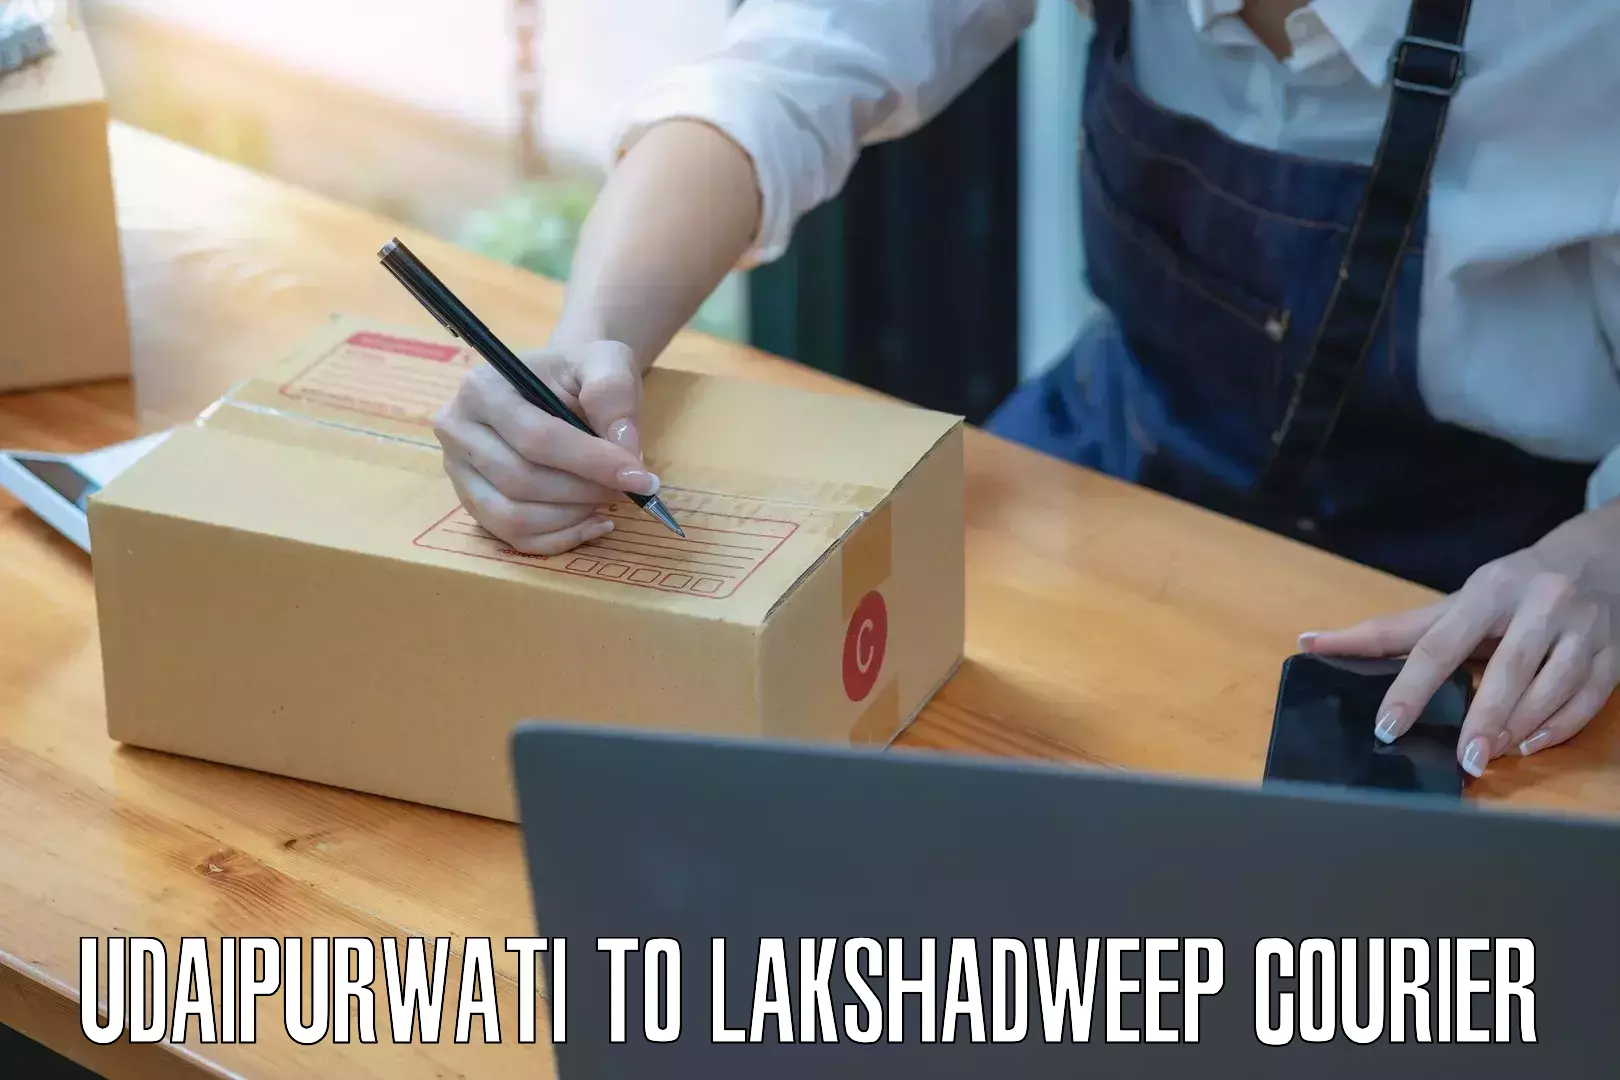 Individual parcel service Udaipurwati to Lakshadweep